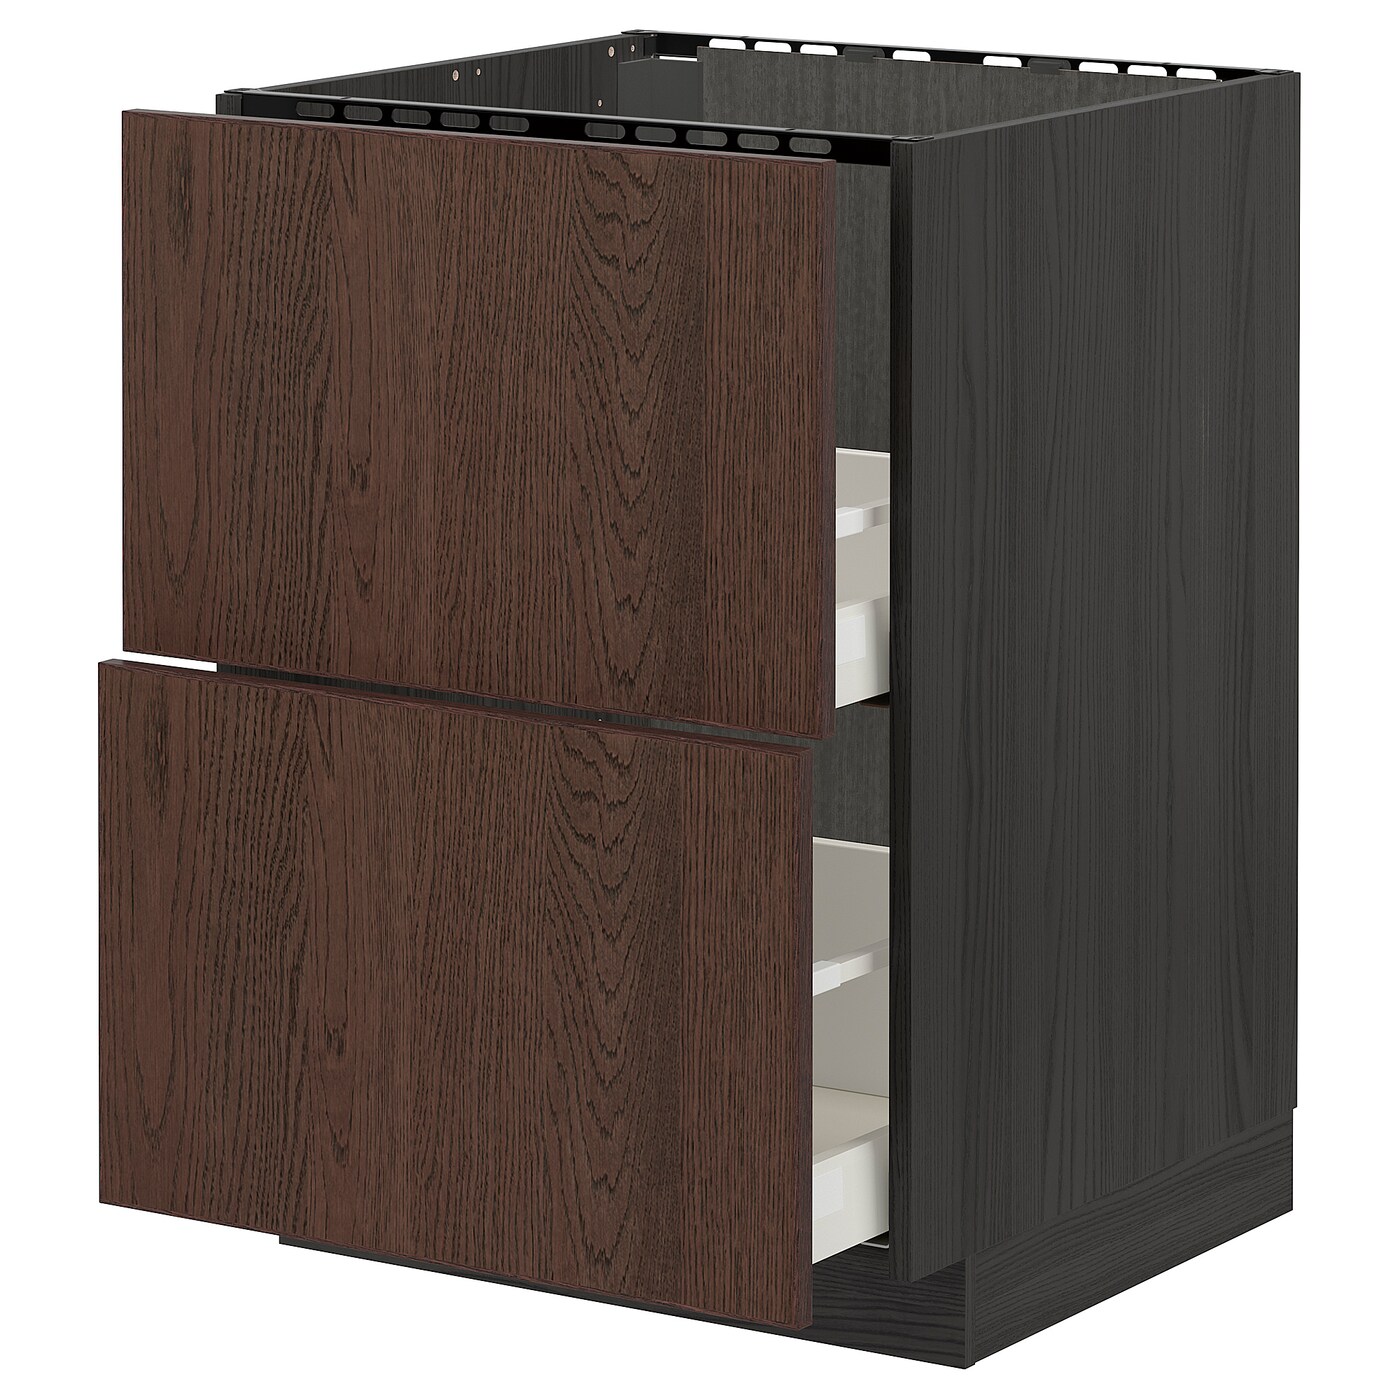 Напольный шкаф - METOD / MAXIMERA IKEA/ МЕТОД/ МАКСИМЕРА ИКЕА,  60х60 см, черный/коричневый